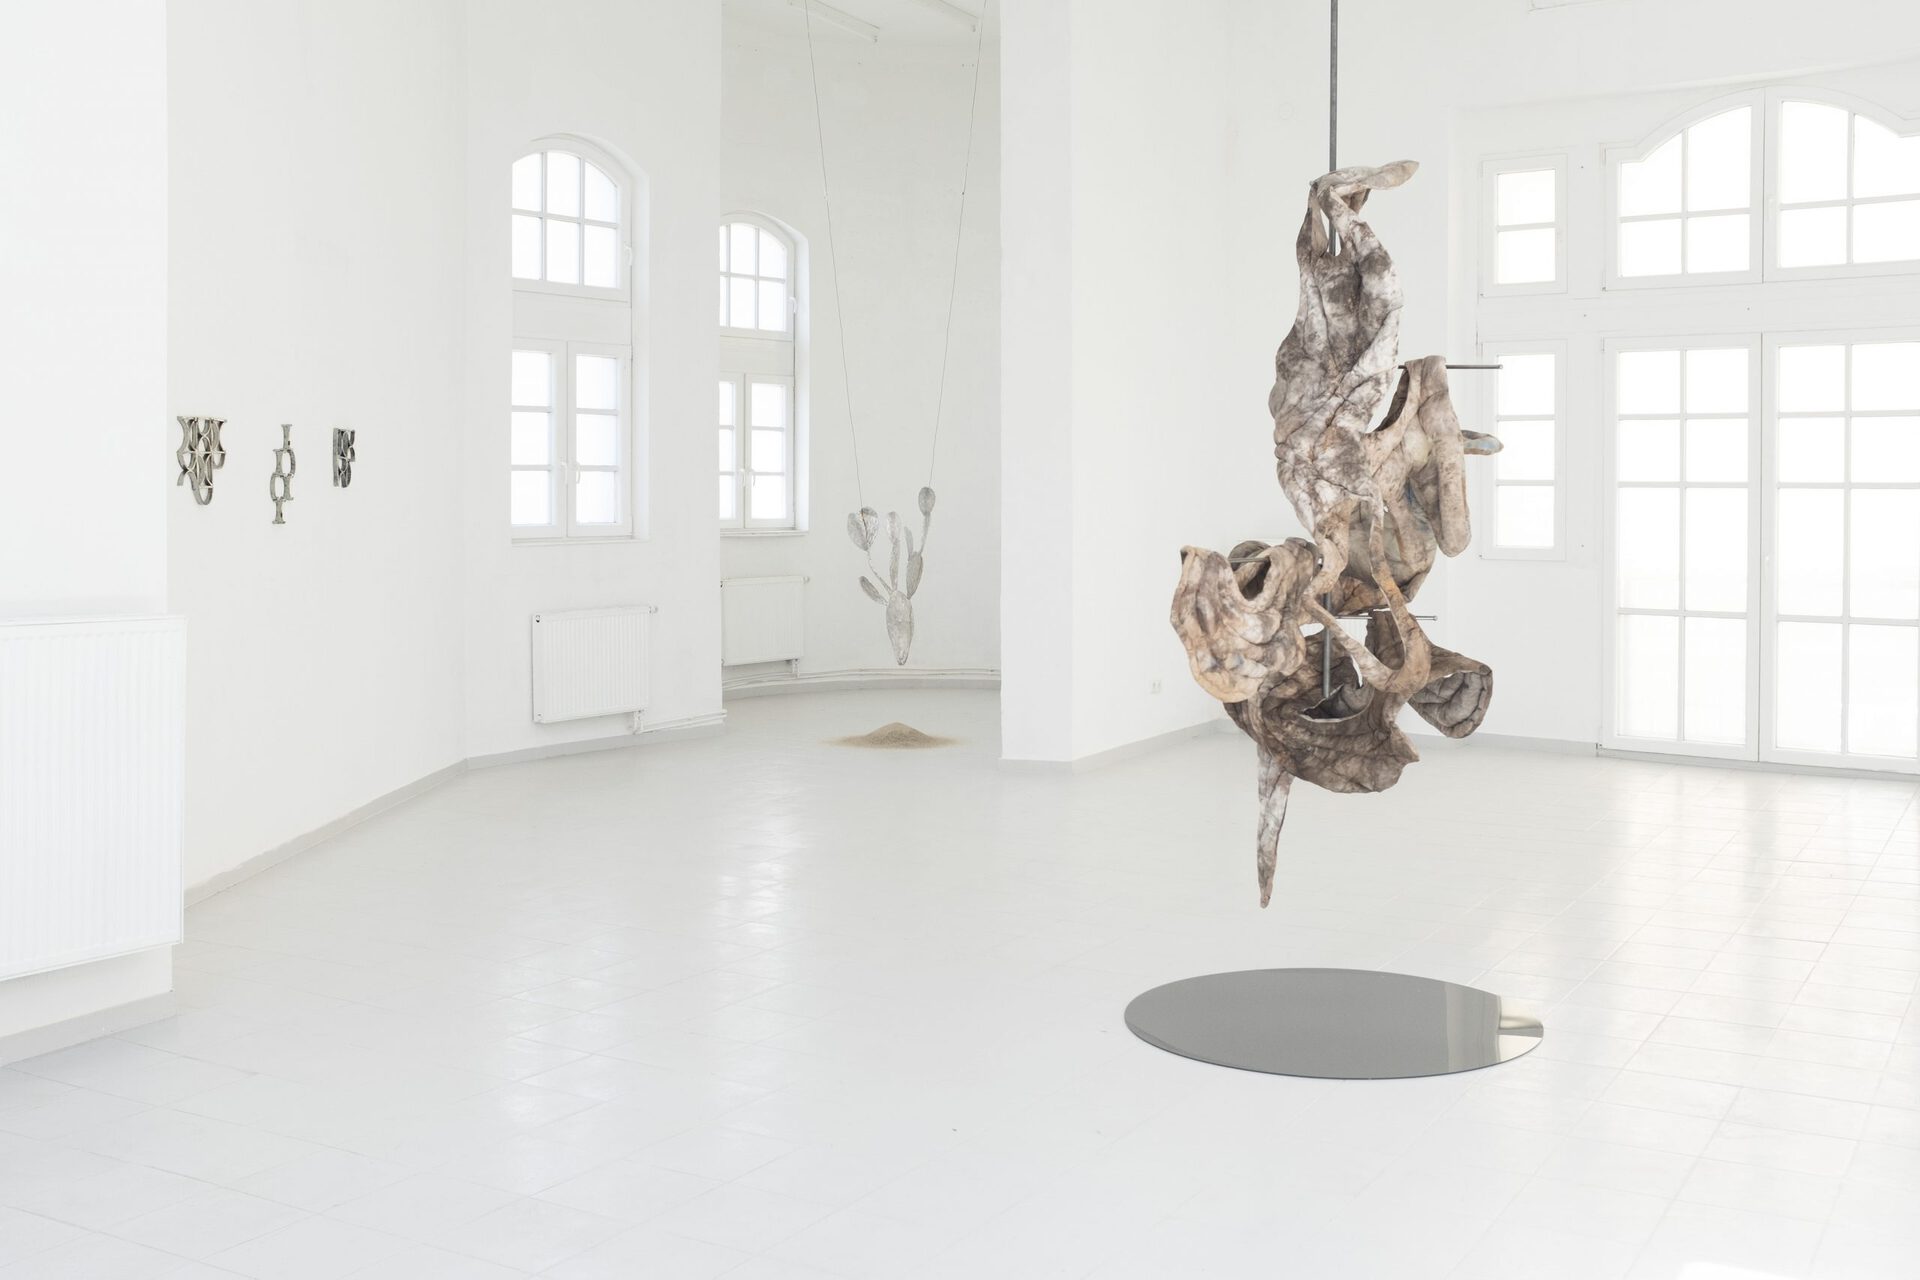 Exhibition View, Mirsini Artakianou, Michal Fuchs, Katharina Gahlert